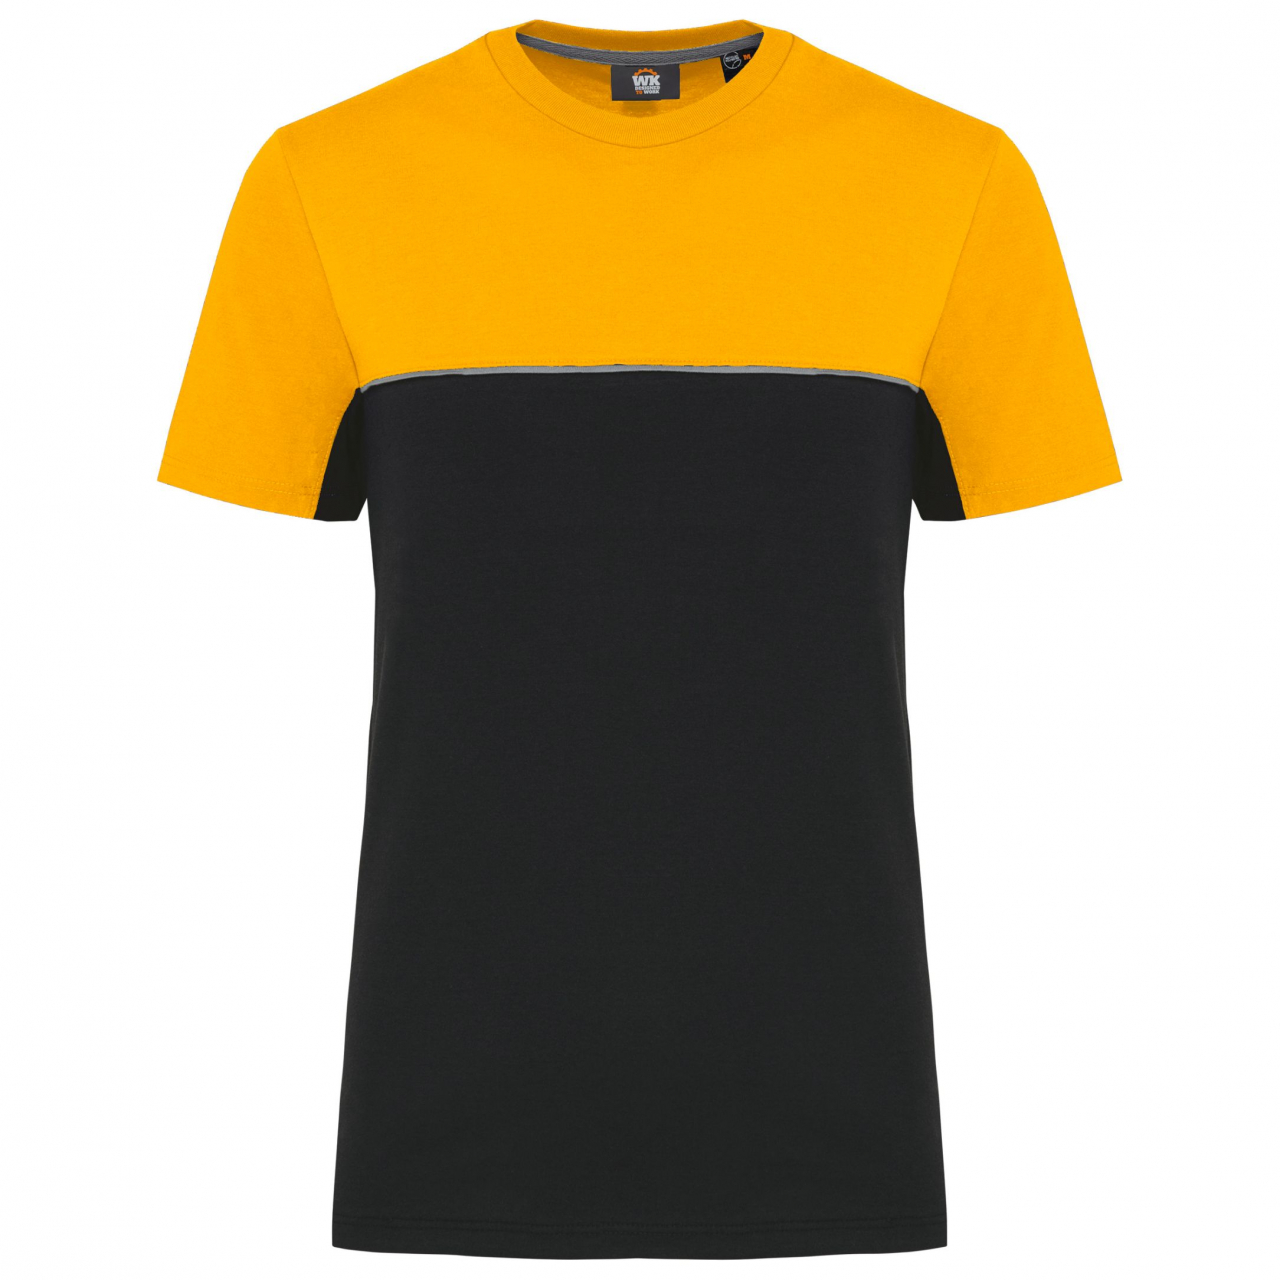 Pracovní triko dvoubarevné WK - černé-žluté, XL